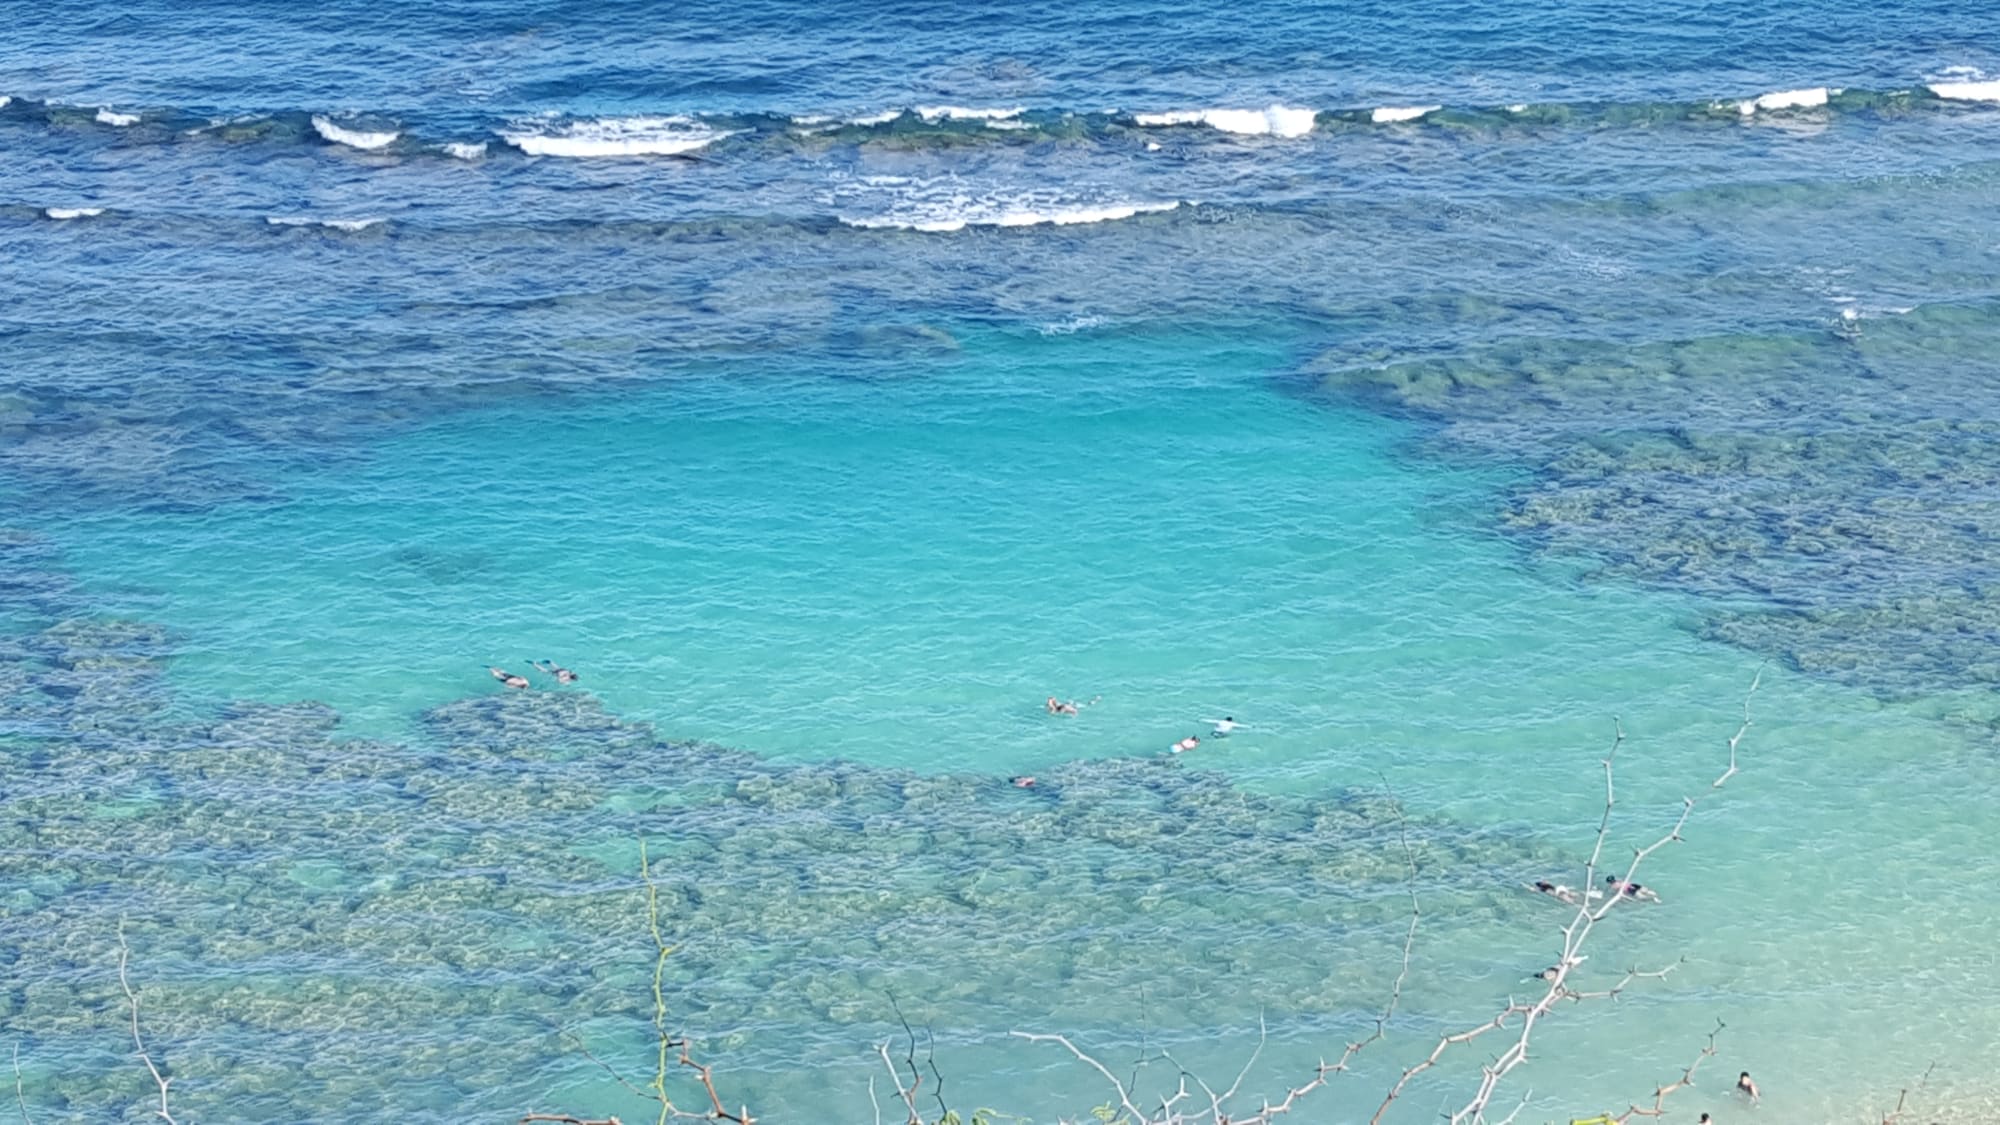 Surf's up: People enjoy the water at Hanauma Bay Nature Preserve, Hawaii